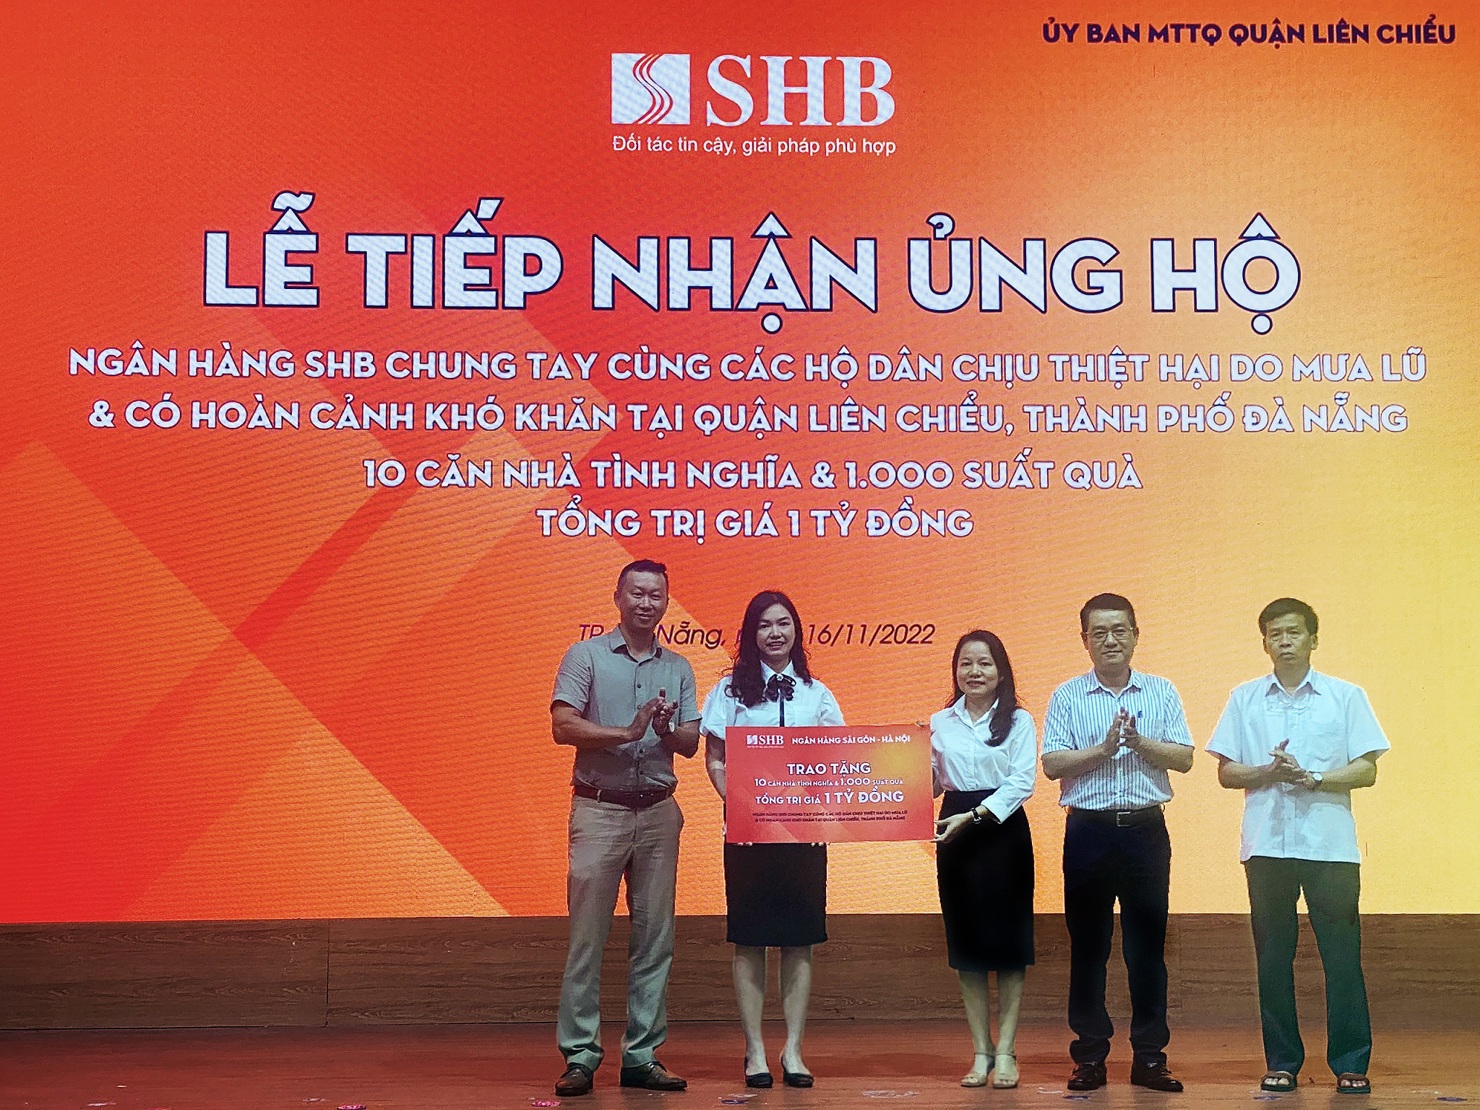 Ngân hàng SHB ủng hộ 1 tỷ đồng nhằm chia sẻ khó khăn với người dân chịu thiệt hại do mưa lũ tại Quận Liên Chiểu, TP Đà Nẵng